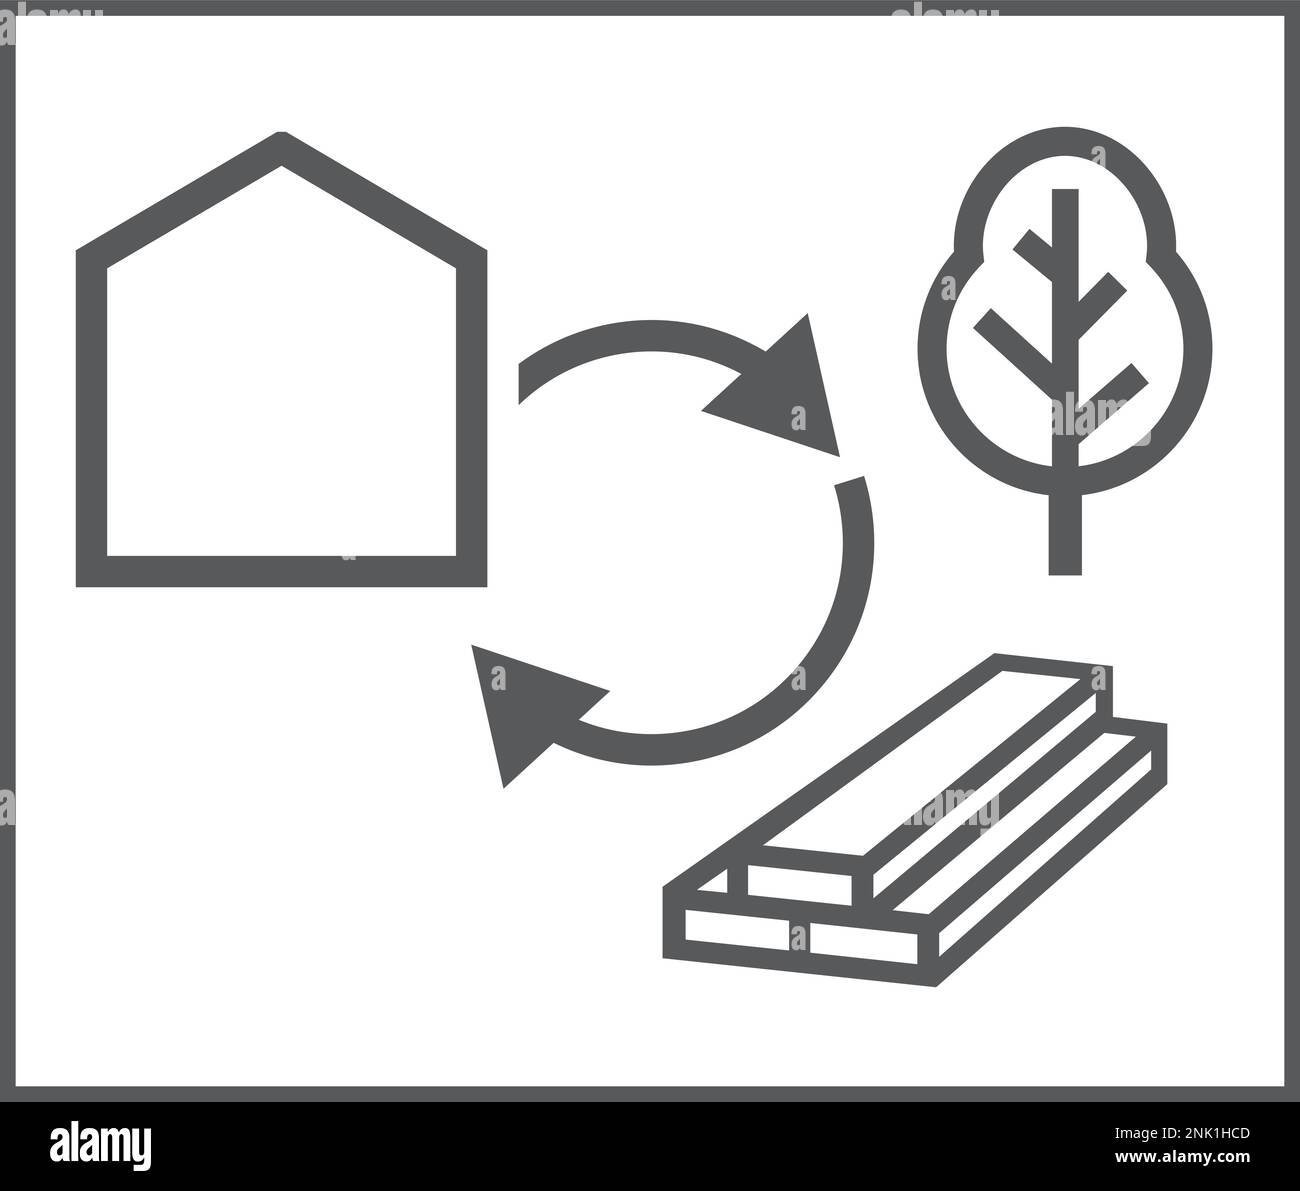 Piktogramm für Bauarbeiten mit Holz, Holzkonstruktion CO2-Bindung Stock Vektor